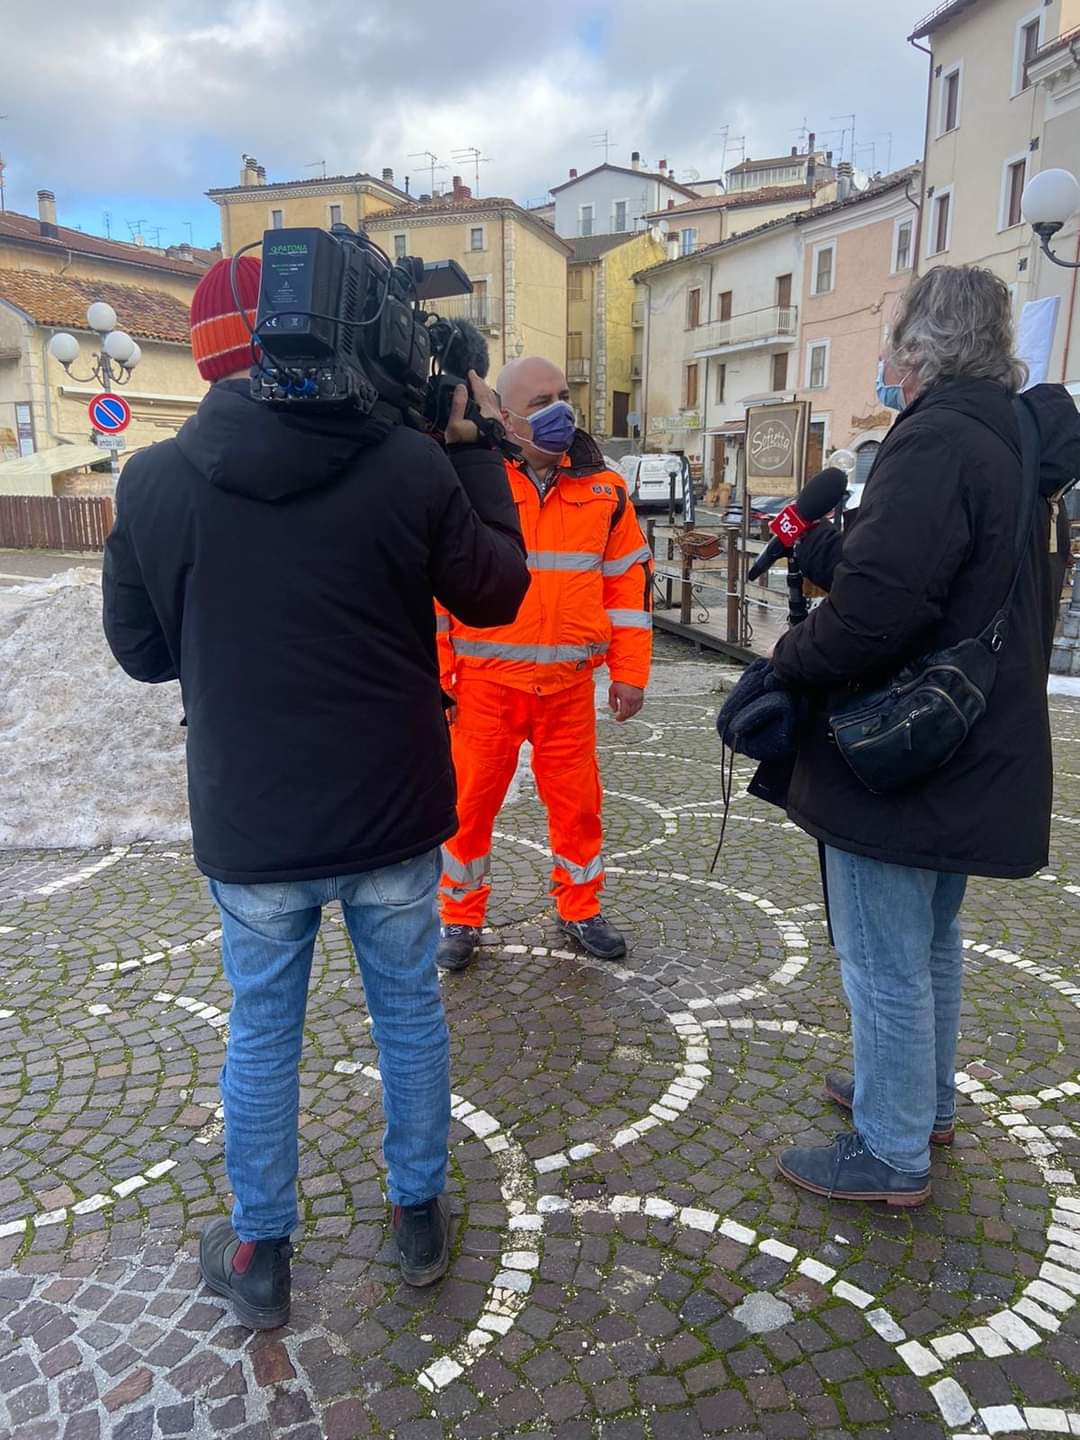 Le telecamere del TG2 arrivano a Rocca Di Mezzo per un servizio sul freddo